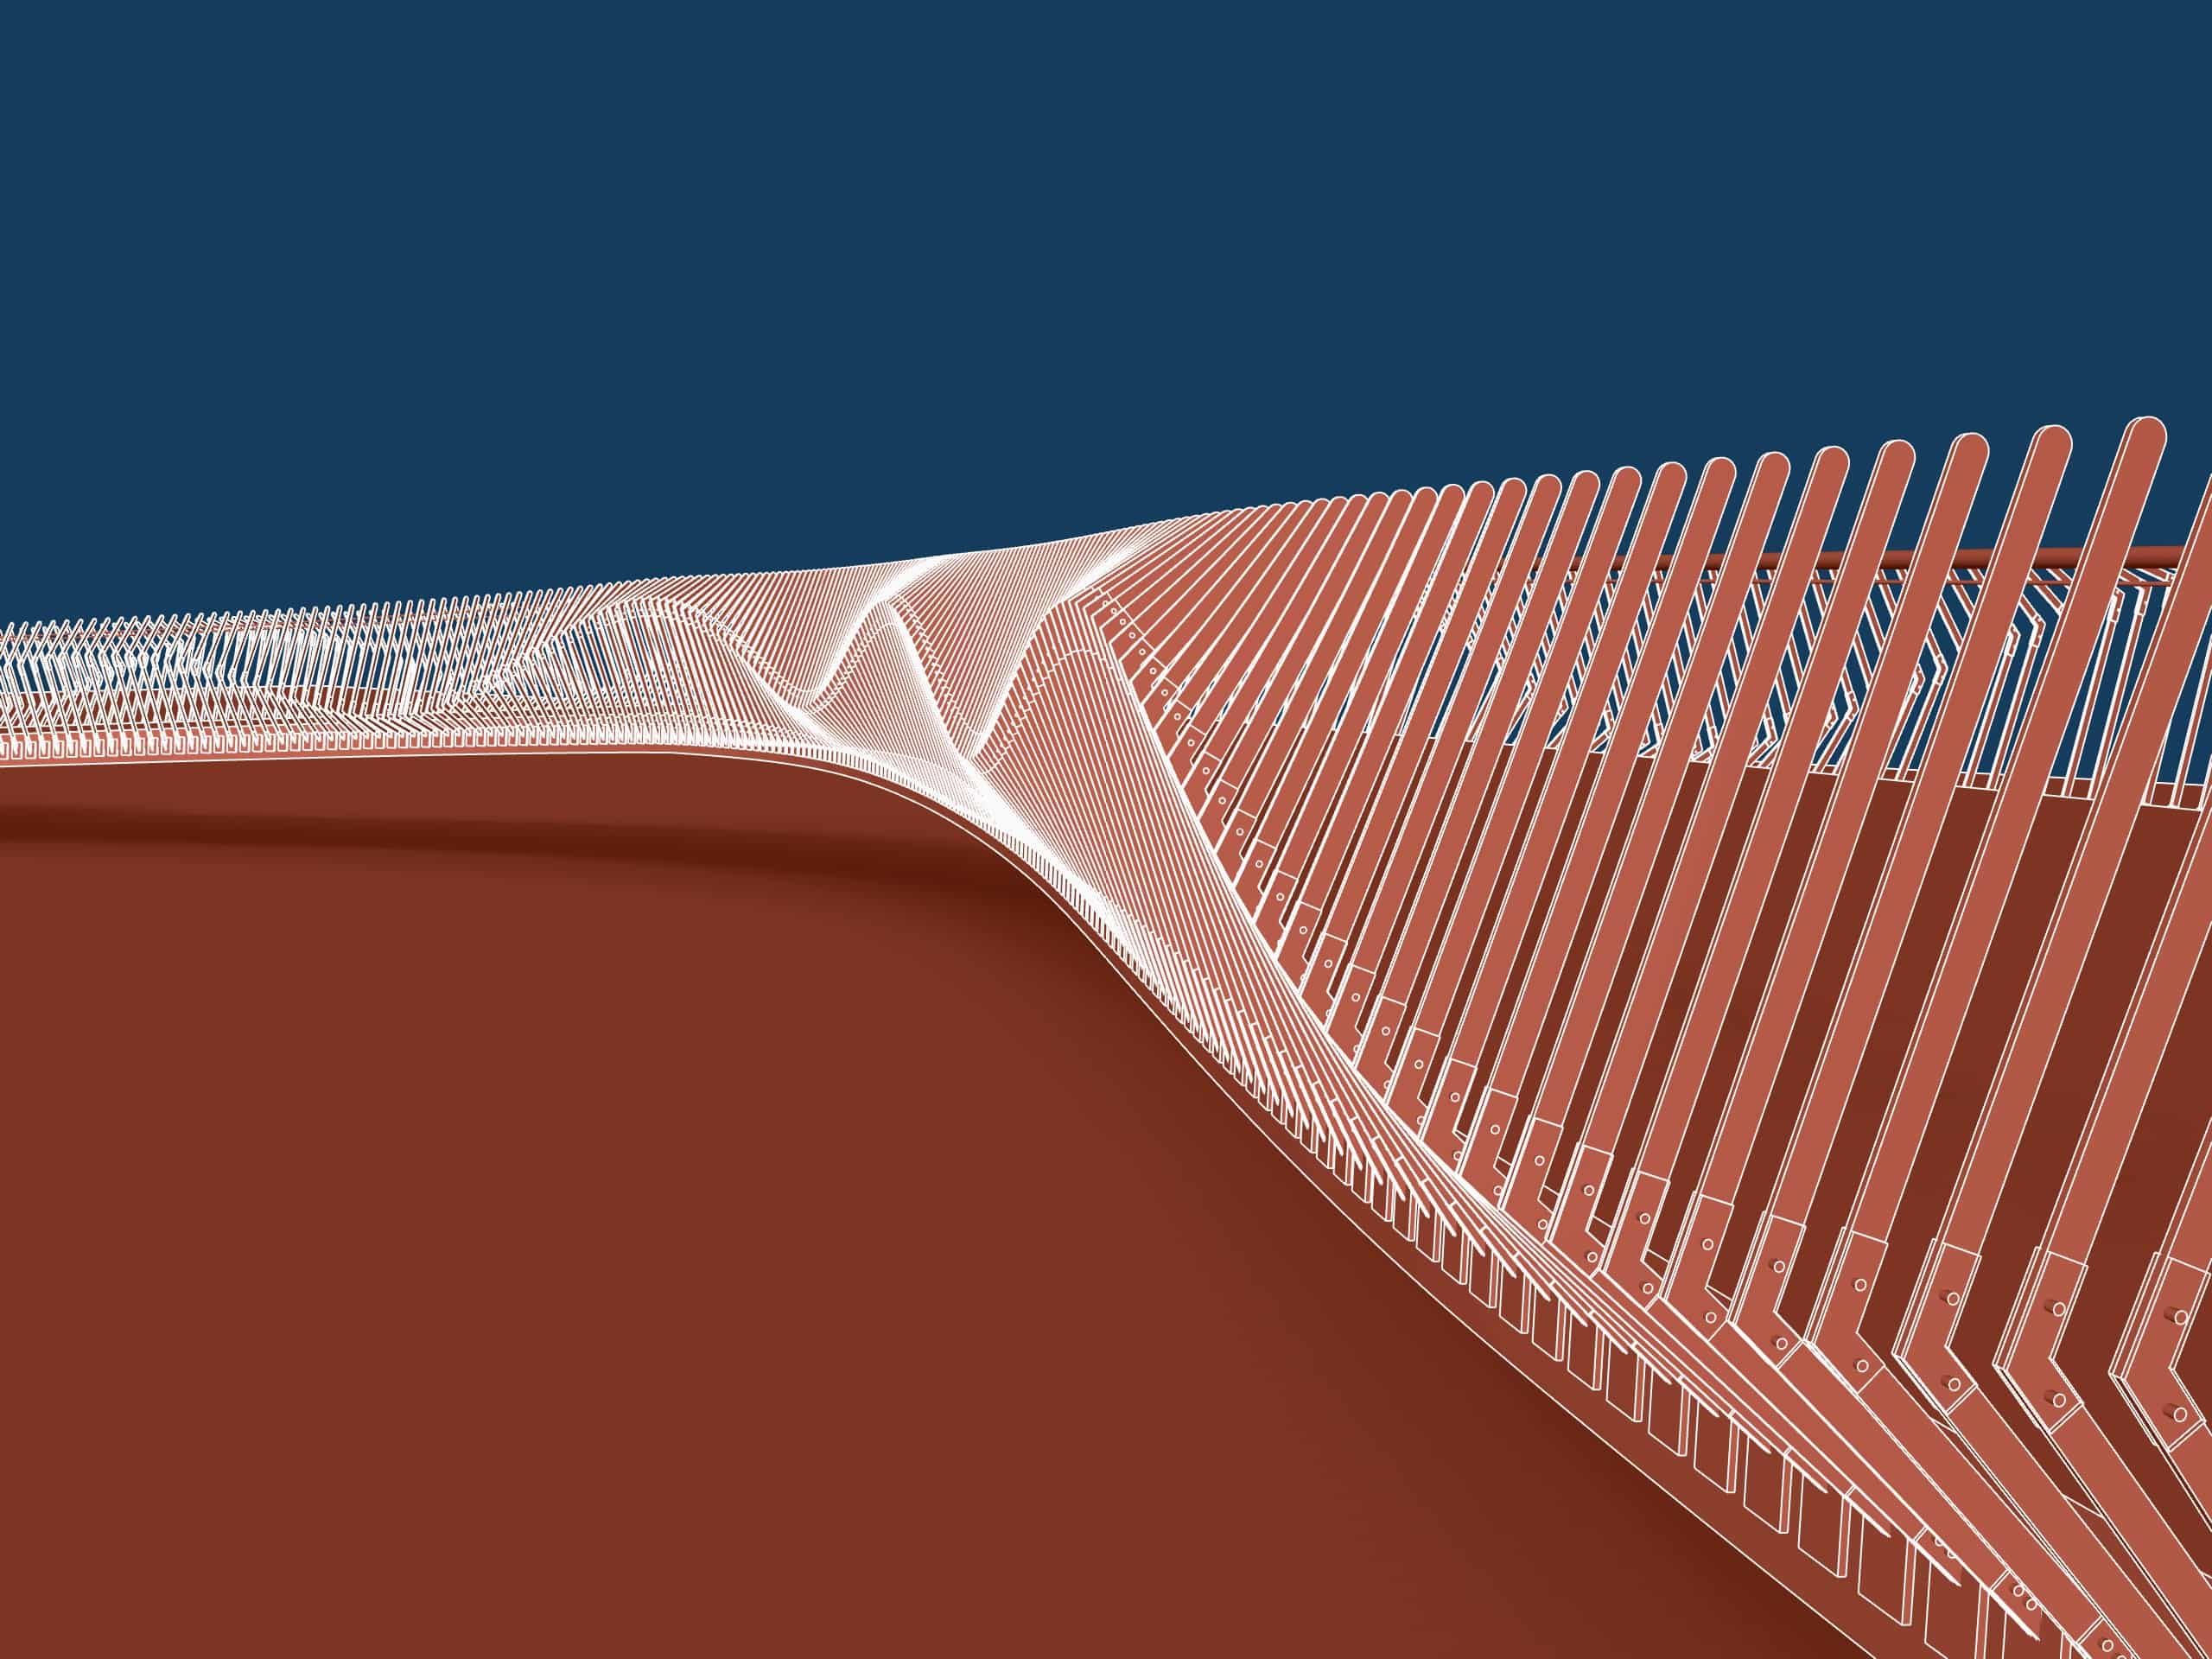 Illustrated sinuous  bridge railing design